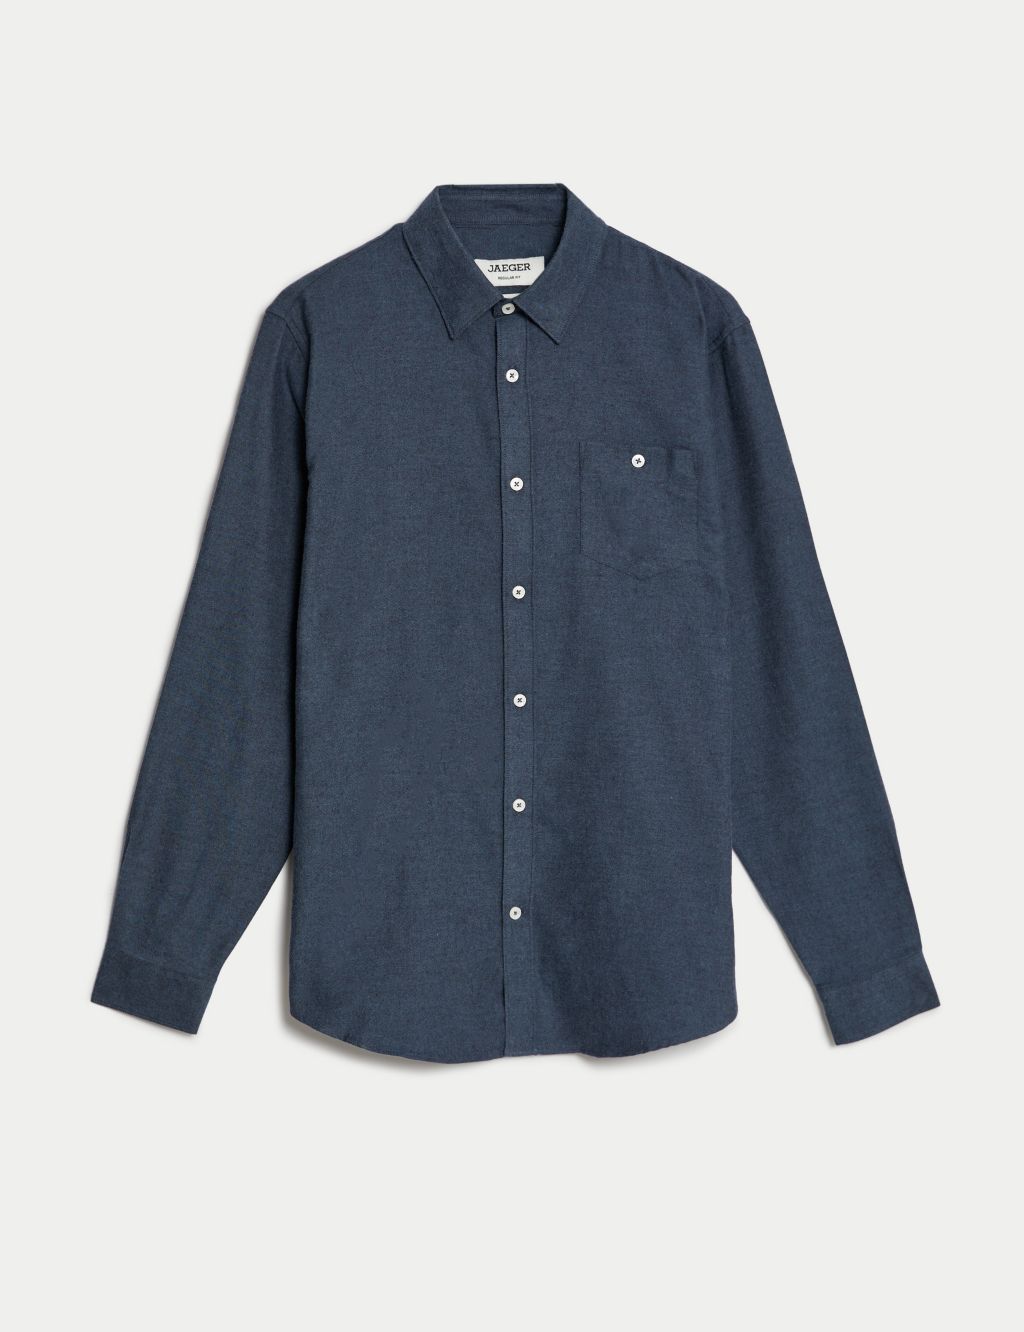 Cotton Rich Flannel Shirt image 1